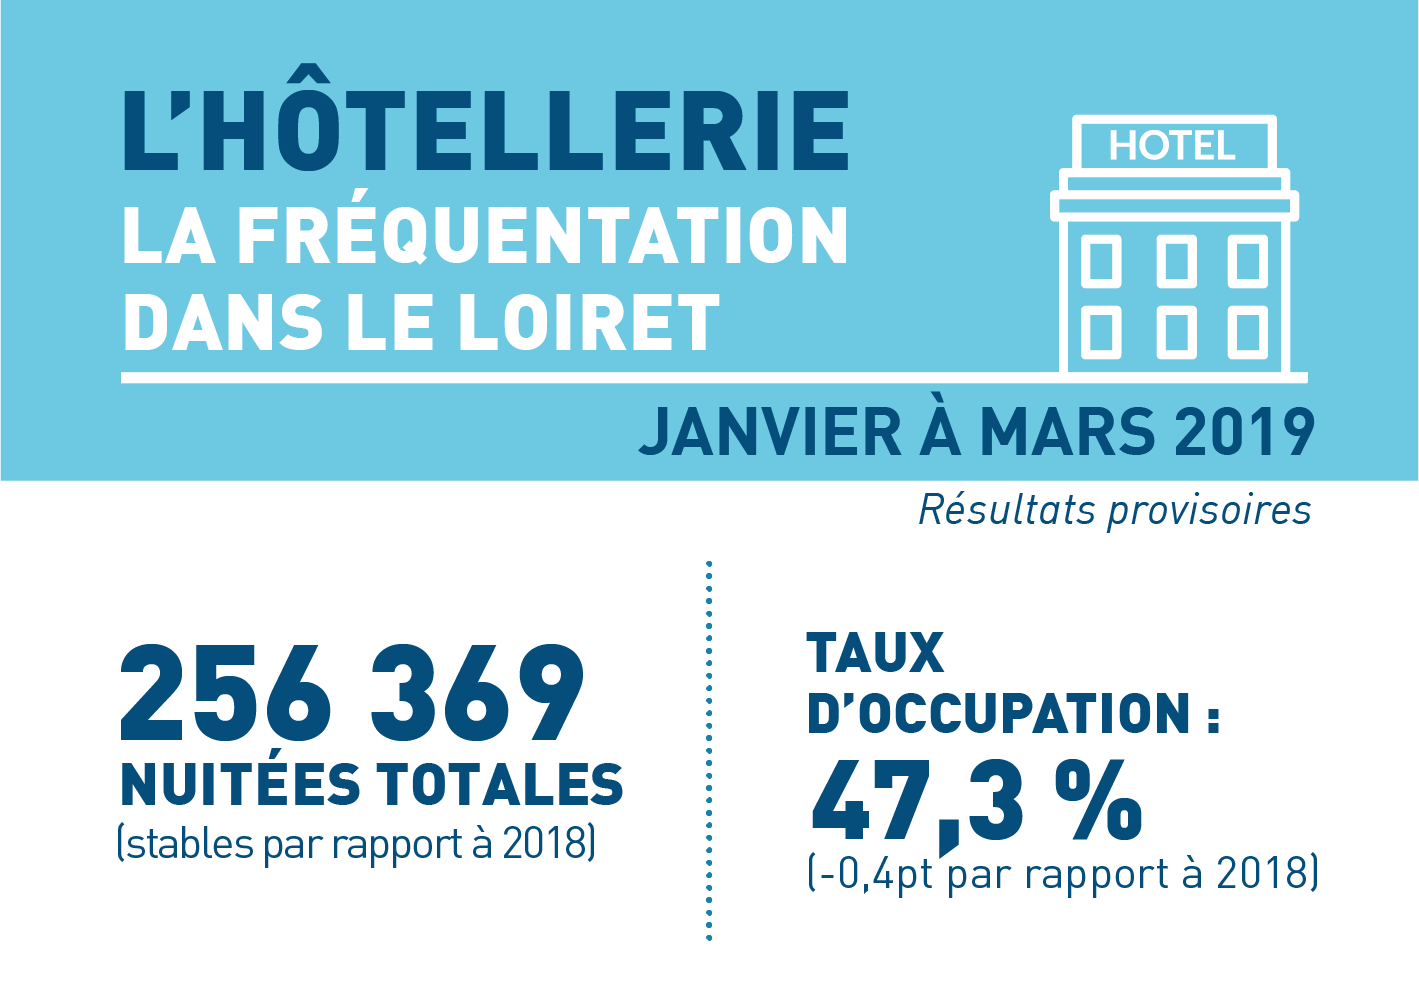 Stabilité des nuitées de janvier à mars 2019 dans les hôtels du Loiret